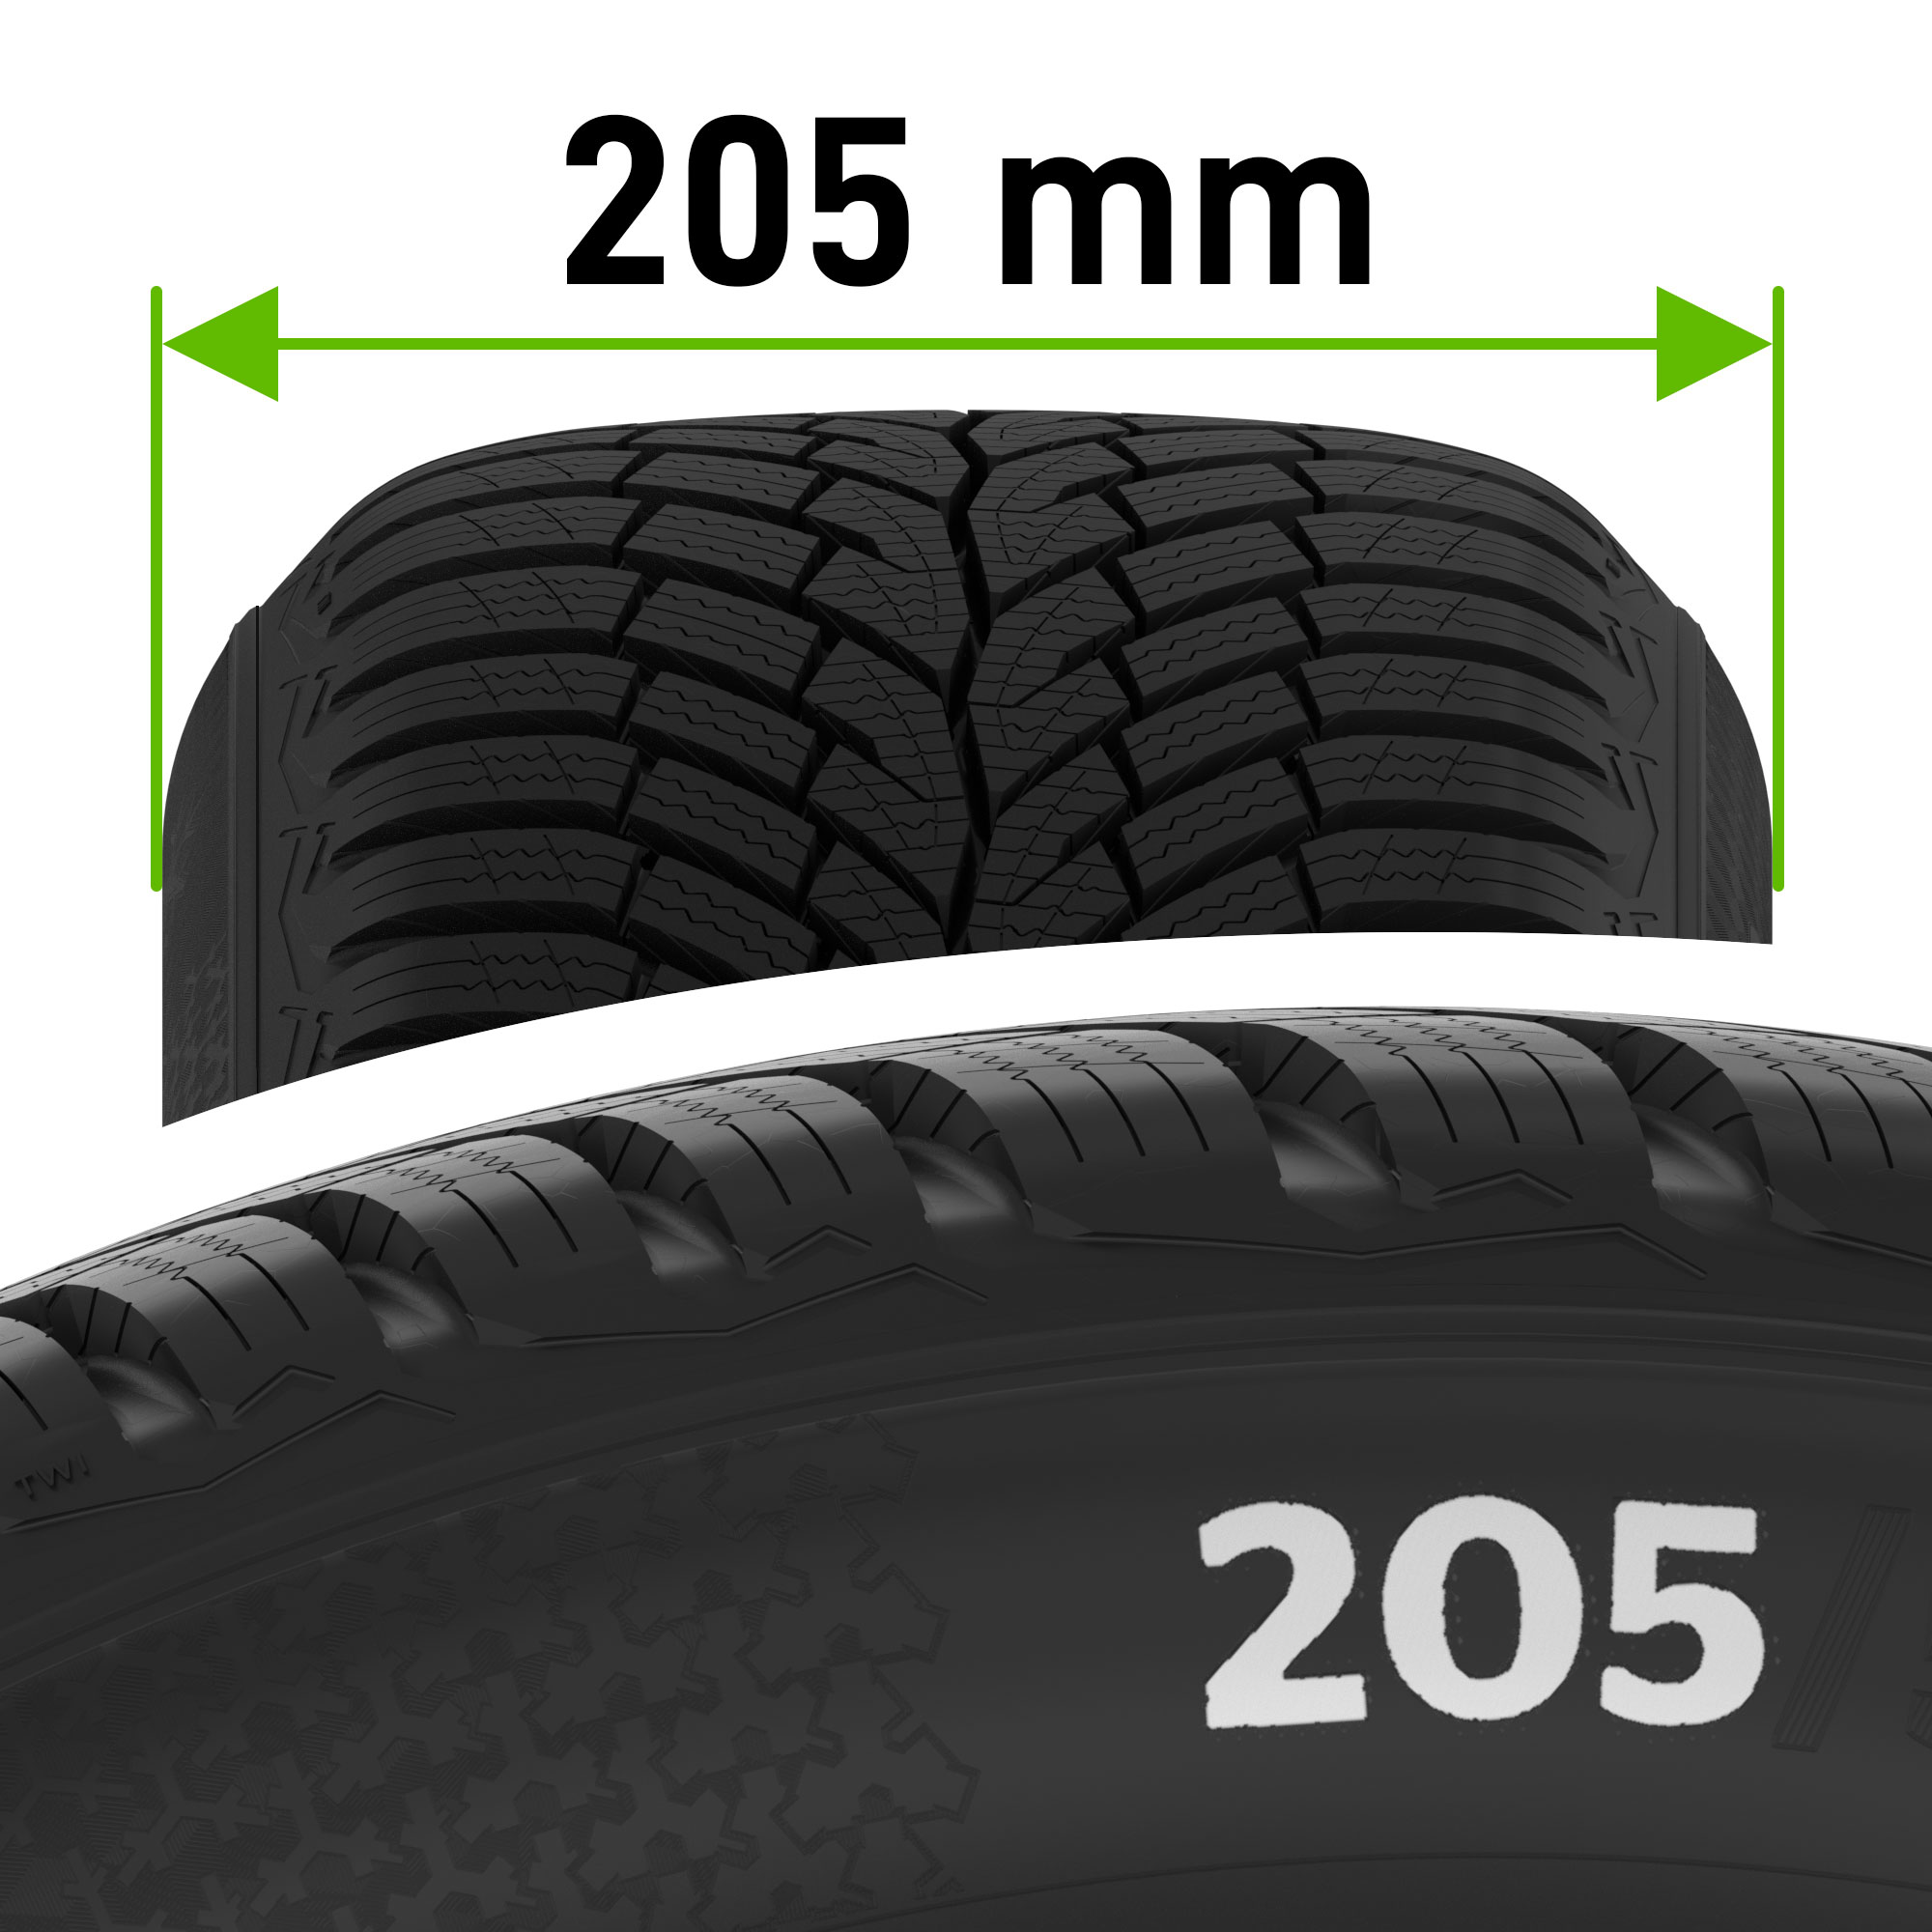 ancho del neumático